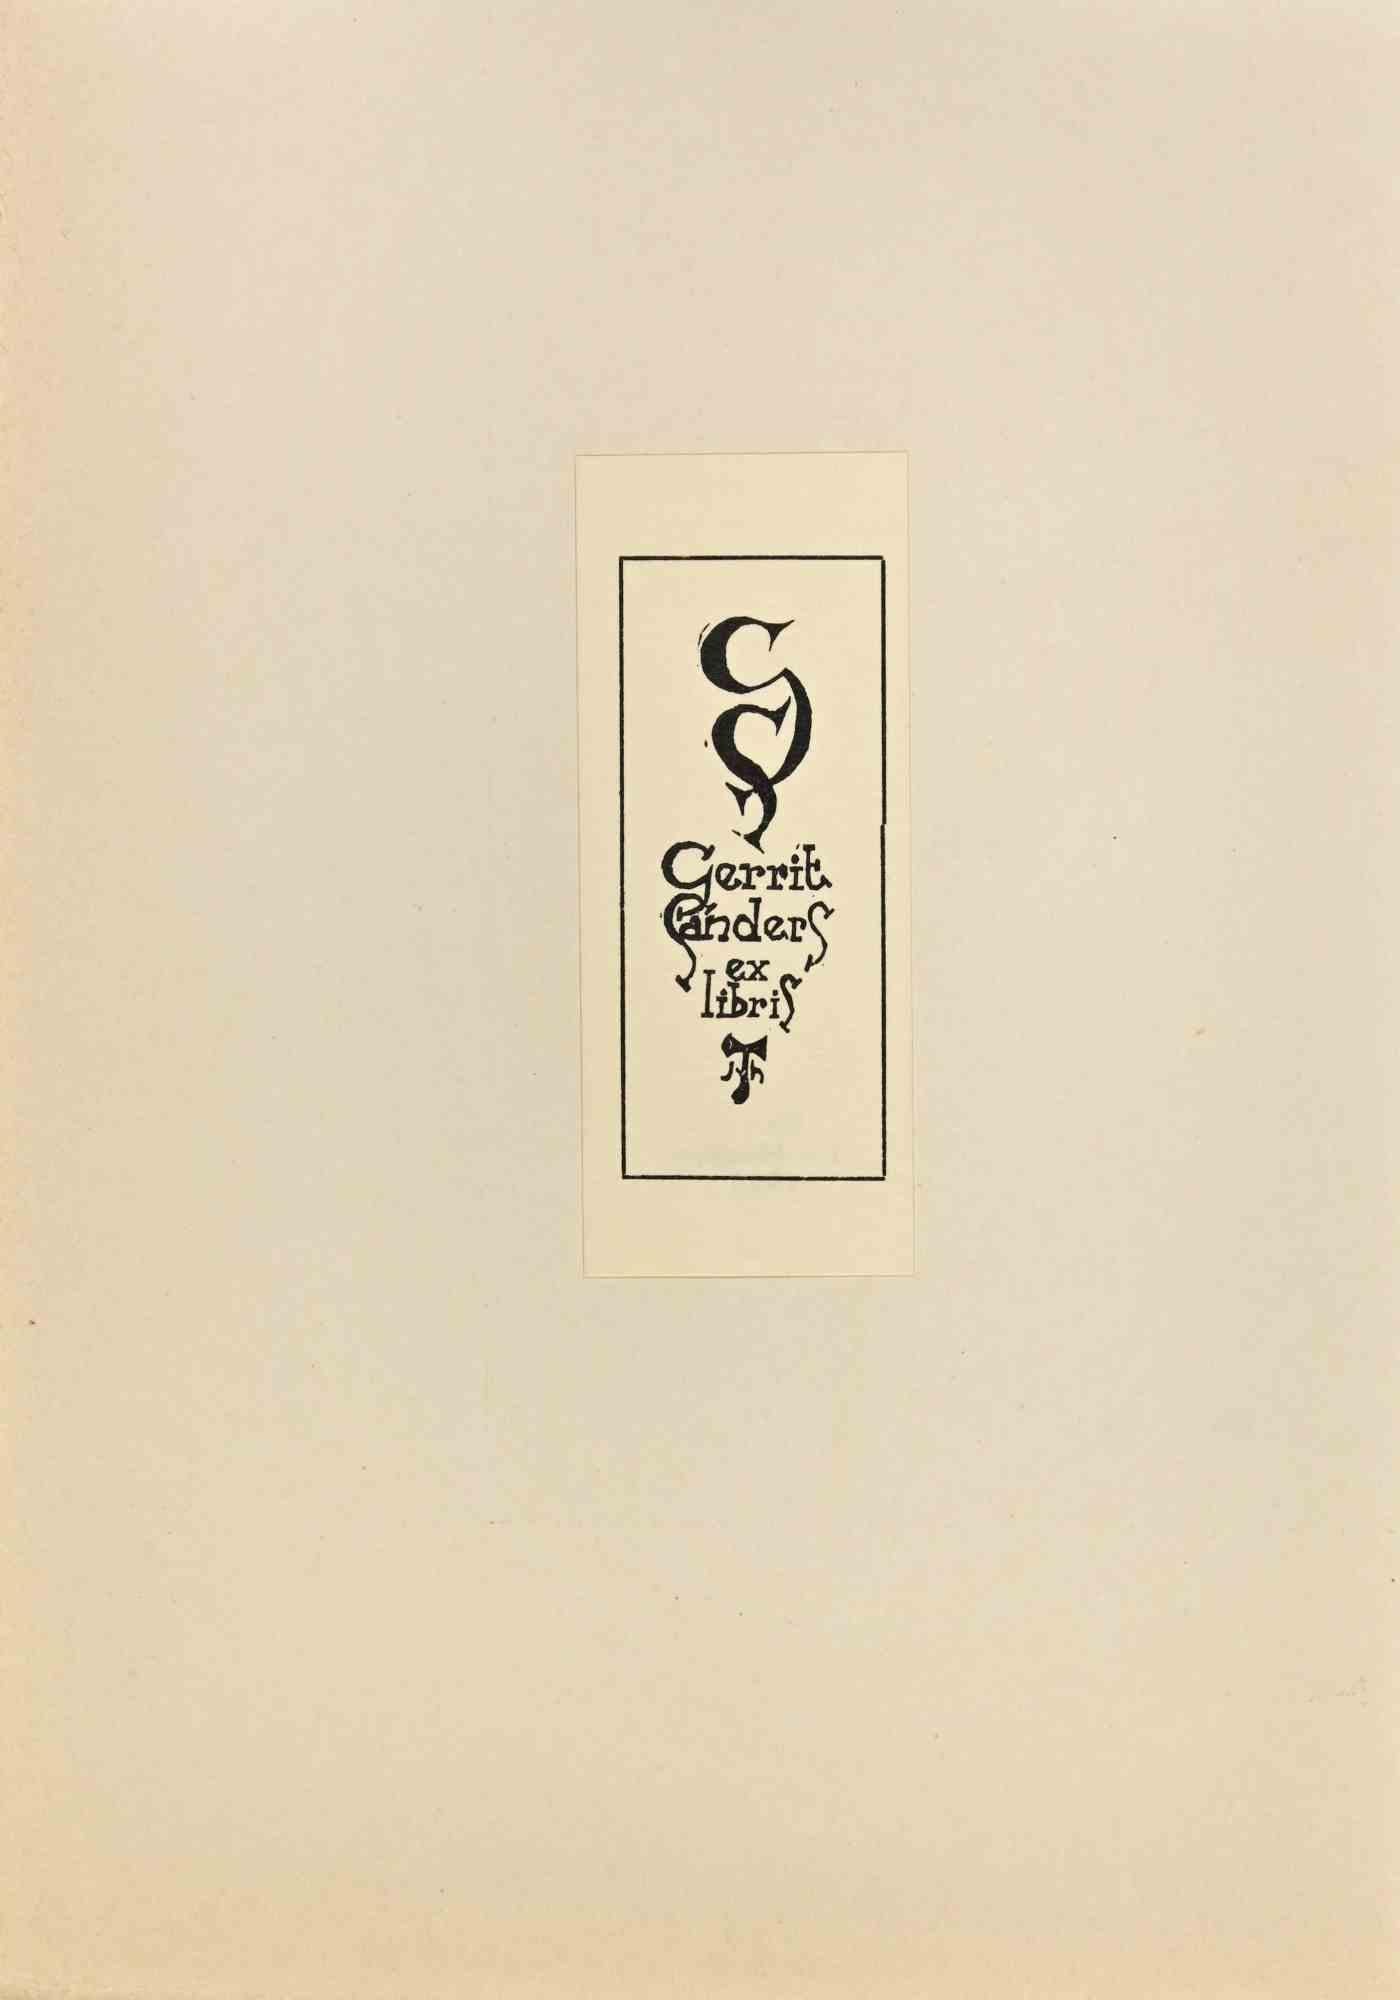 Ex-Libris Cerrit Sanders ist ein Kunstwerk von Jan Van Heugten aus dem Jahr 1945. 

Holzschnitt auf Papier. Das Werk ist auf Karton geklebt und auf der Rückseite auf einem Schild signiert. 

Abmessungen insgesamt: 21 x 15 cm.

Gute Bedingungen.

Das